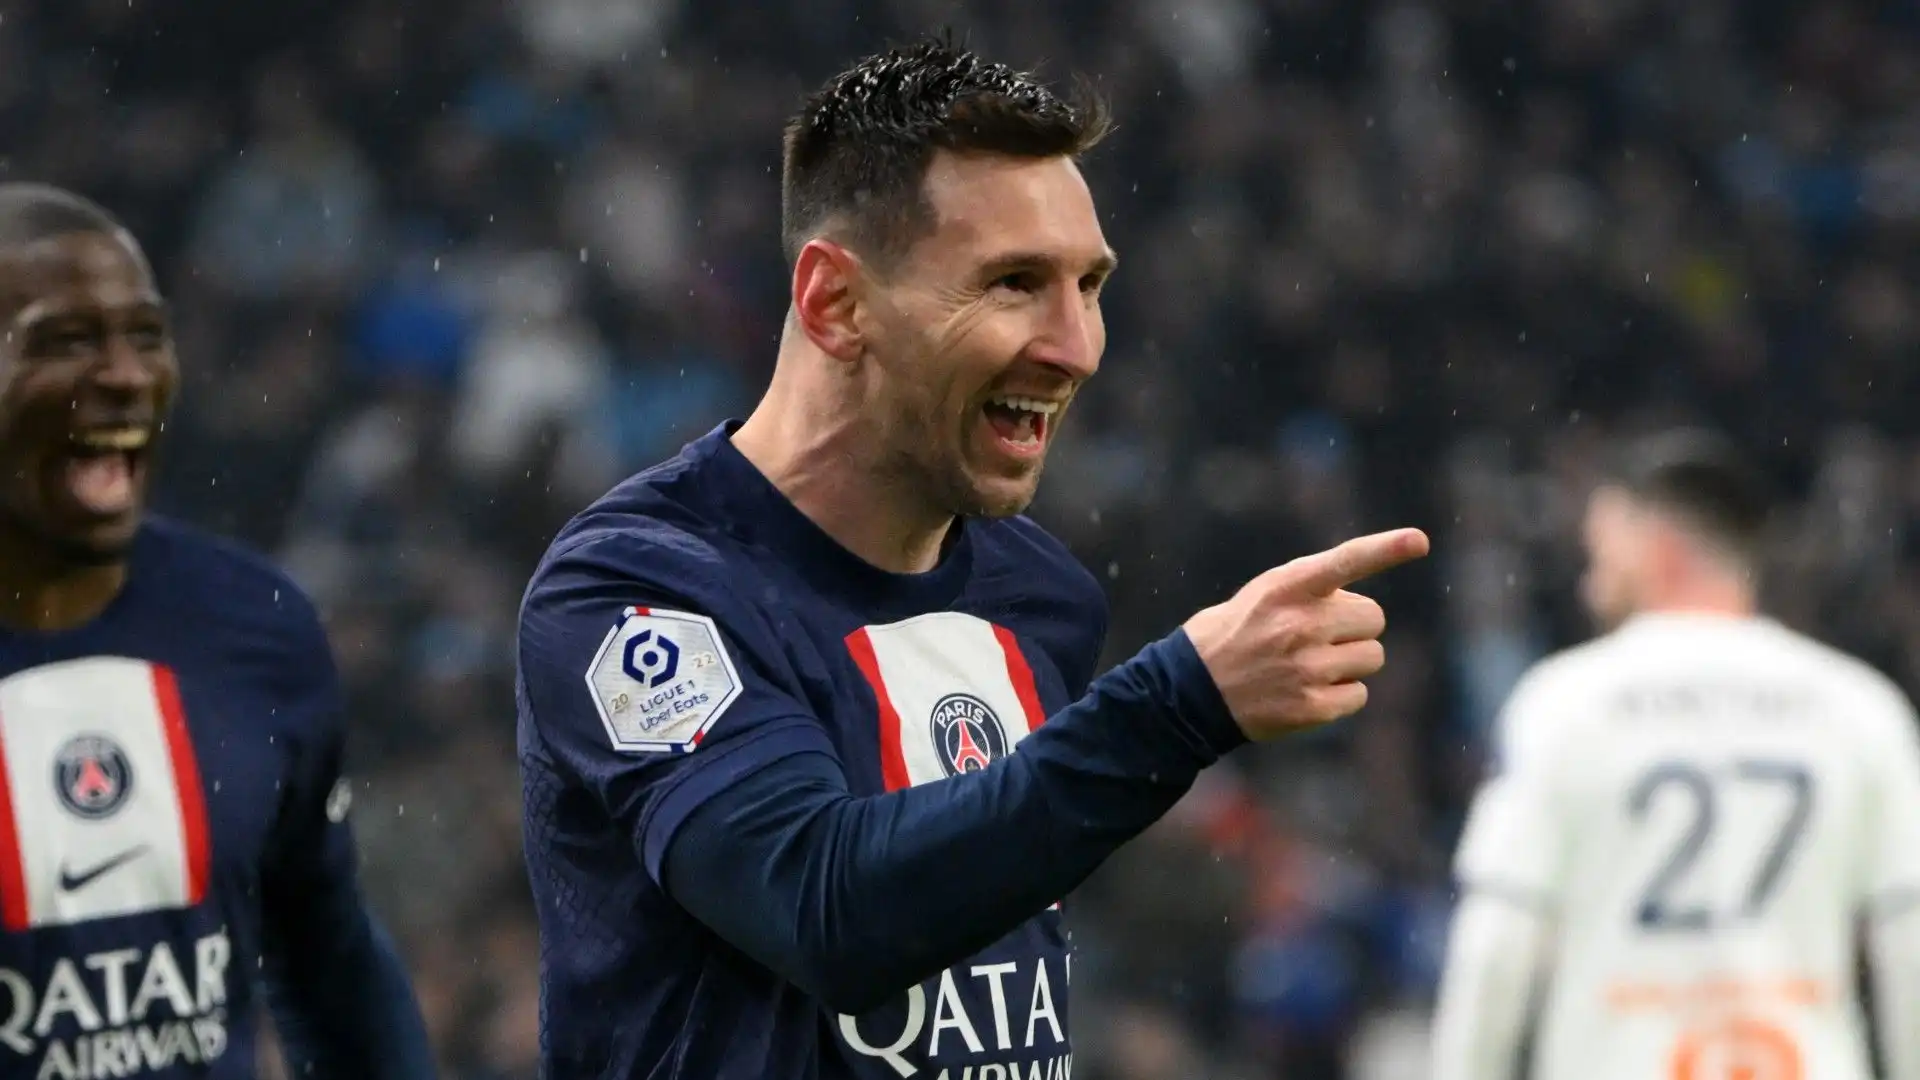 "Sabato sarà l'ultima partita di Messi con il PSG. E' stato un onore allenare un campione come lui, gli auguro il meglio per il suo futuro" ha detto Galtier